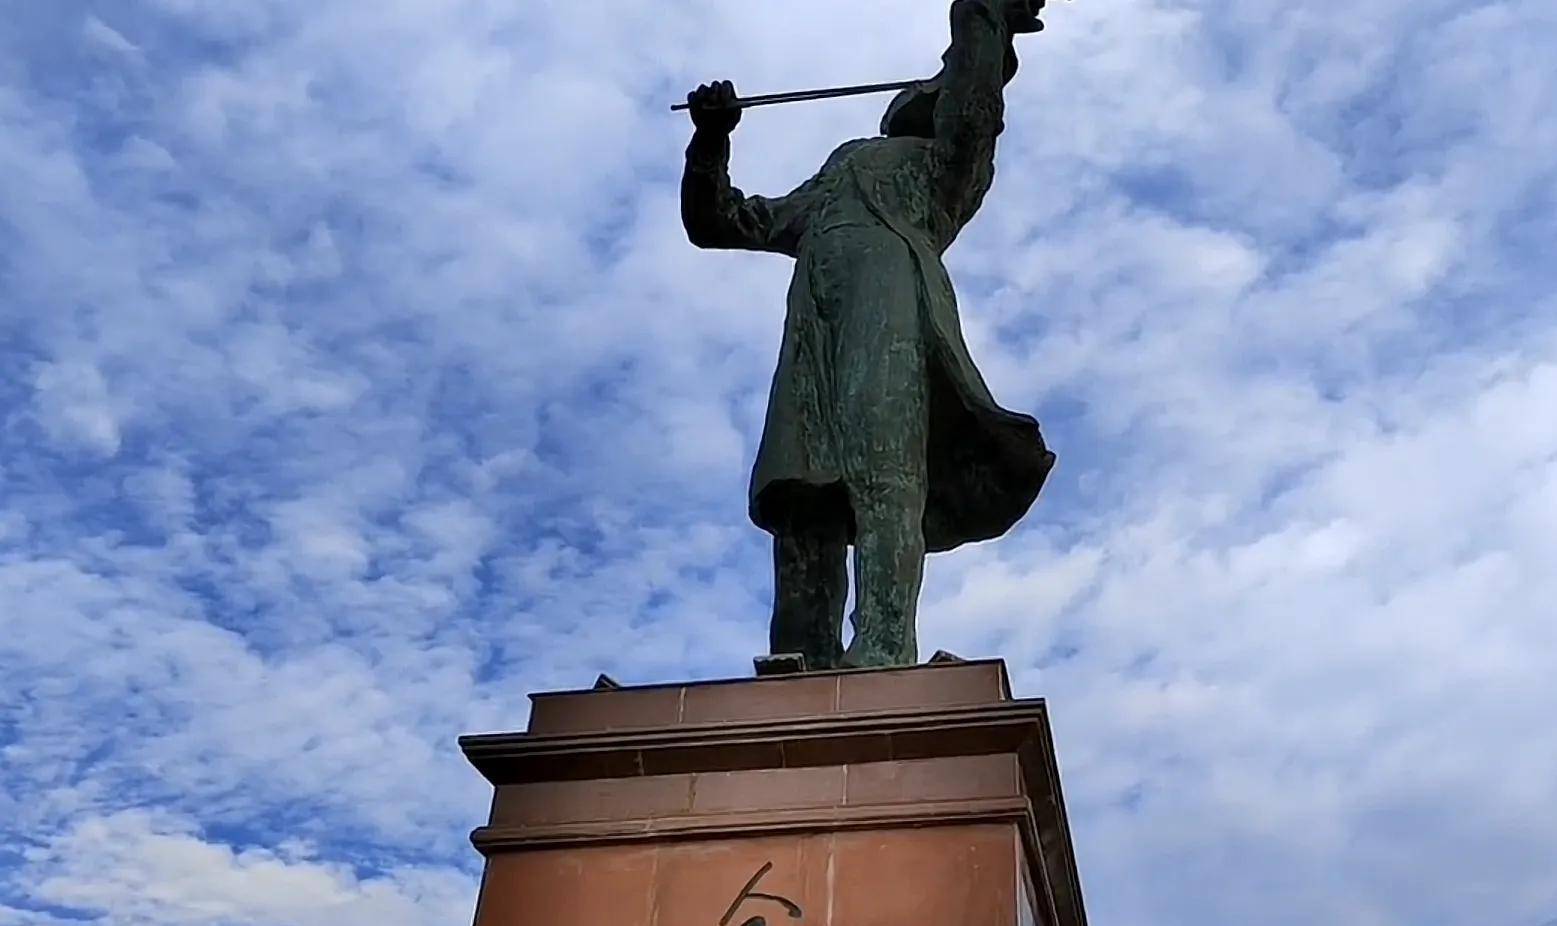 广场山顶立有聂耳演奏小提琴的铜像,聂耳不仅是玉溪人民的骄傲也是